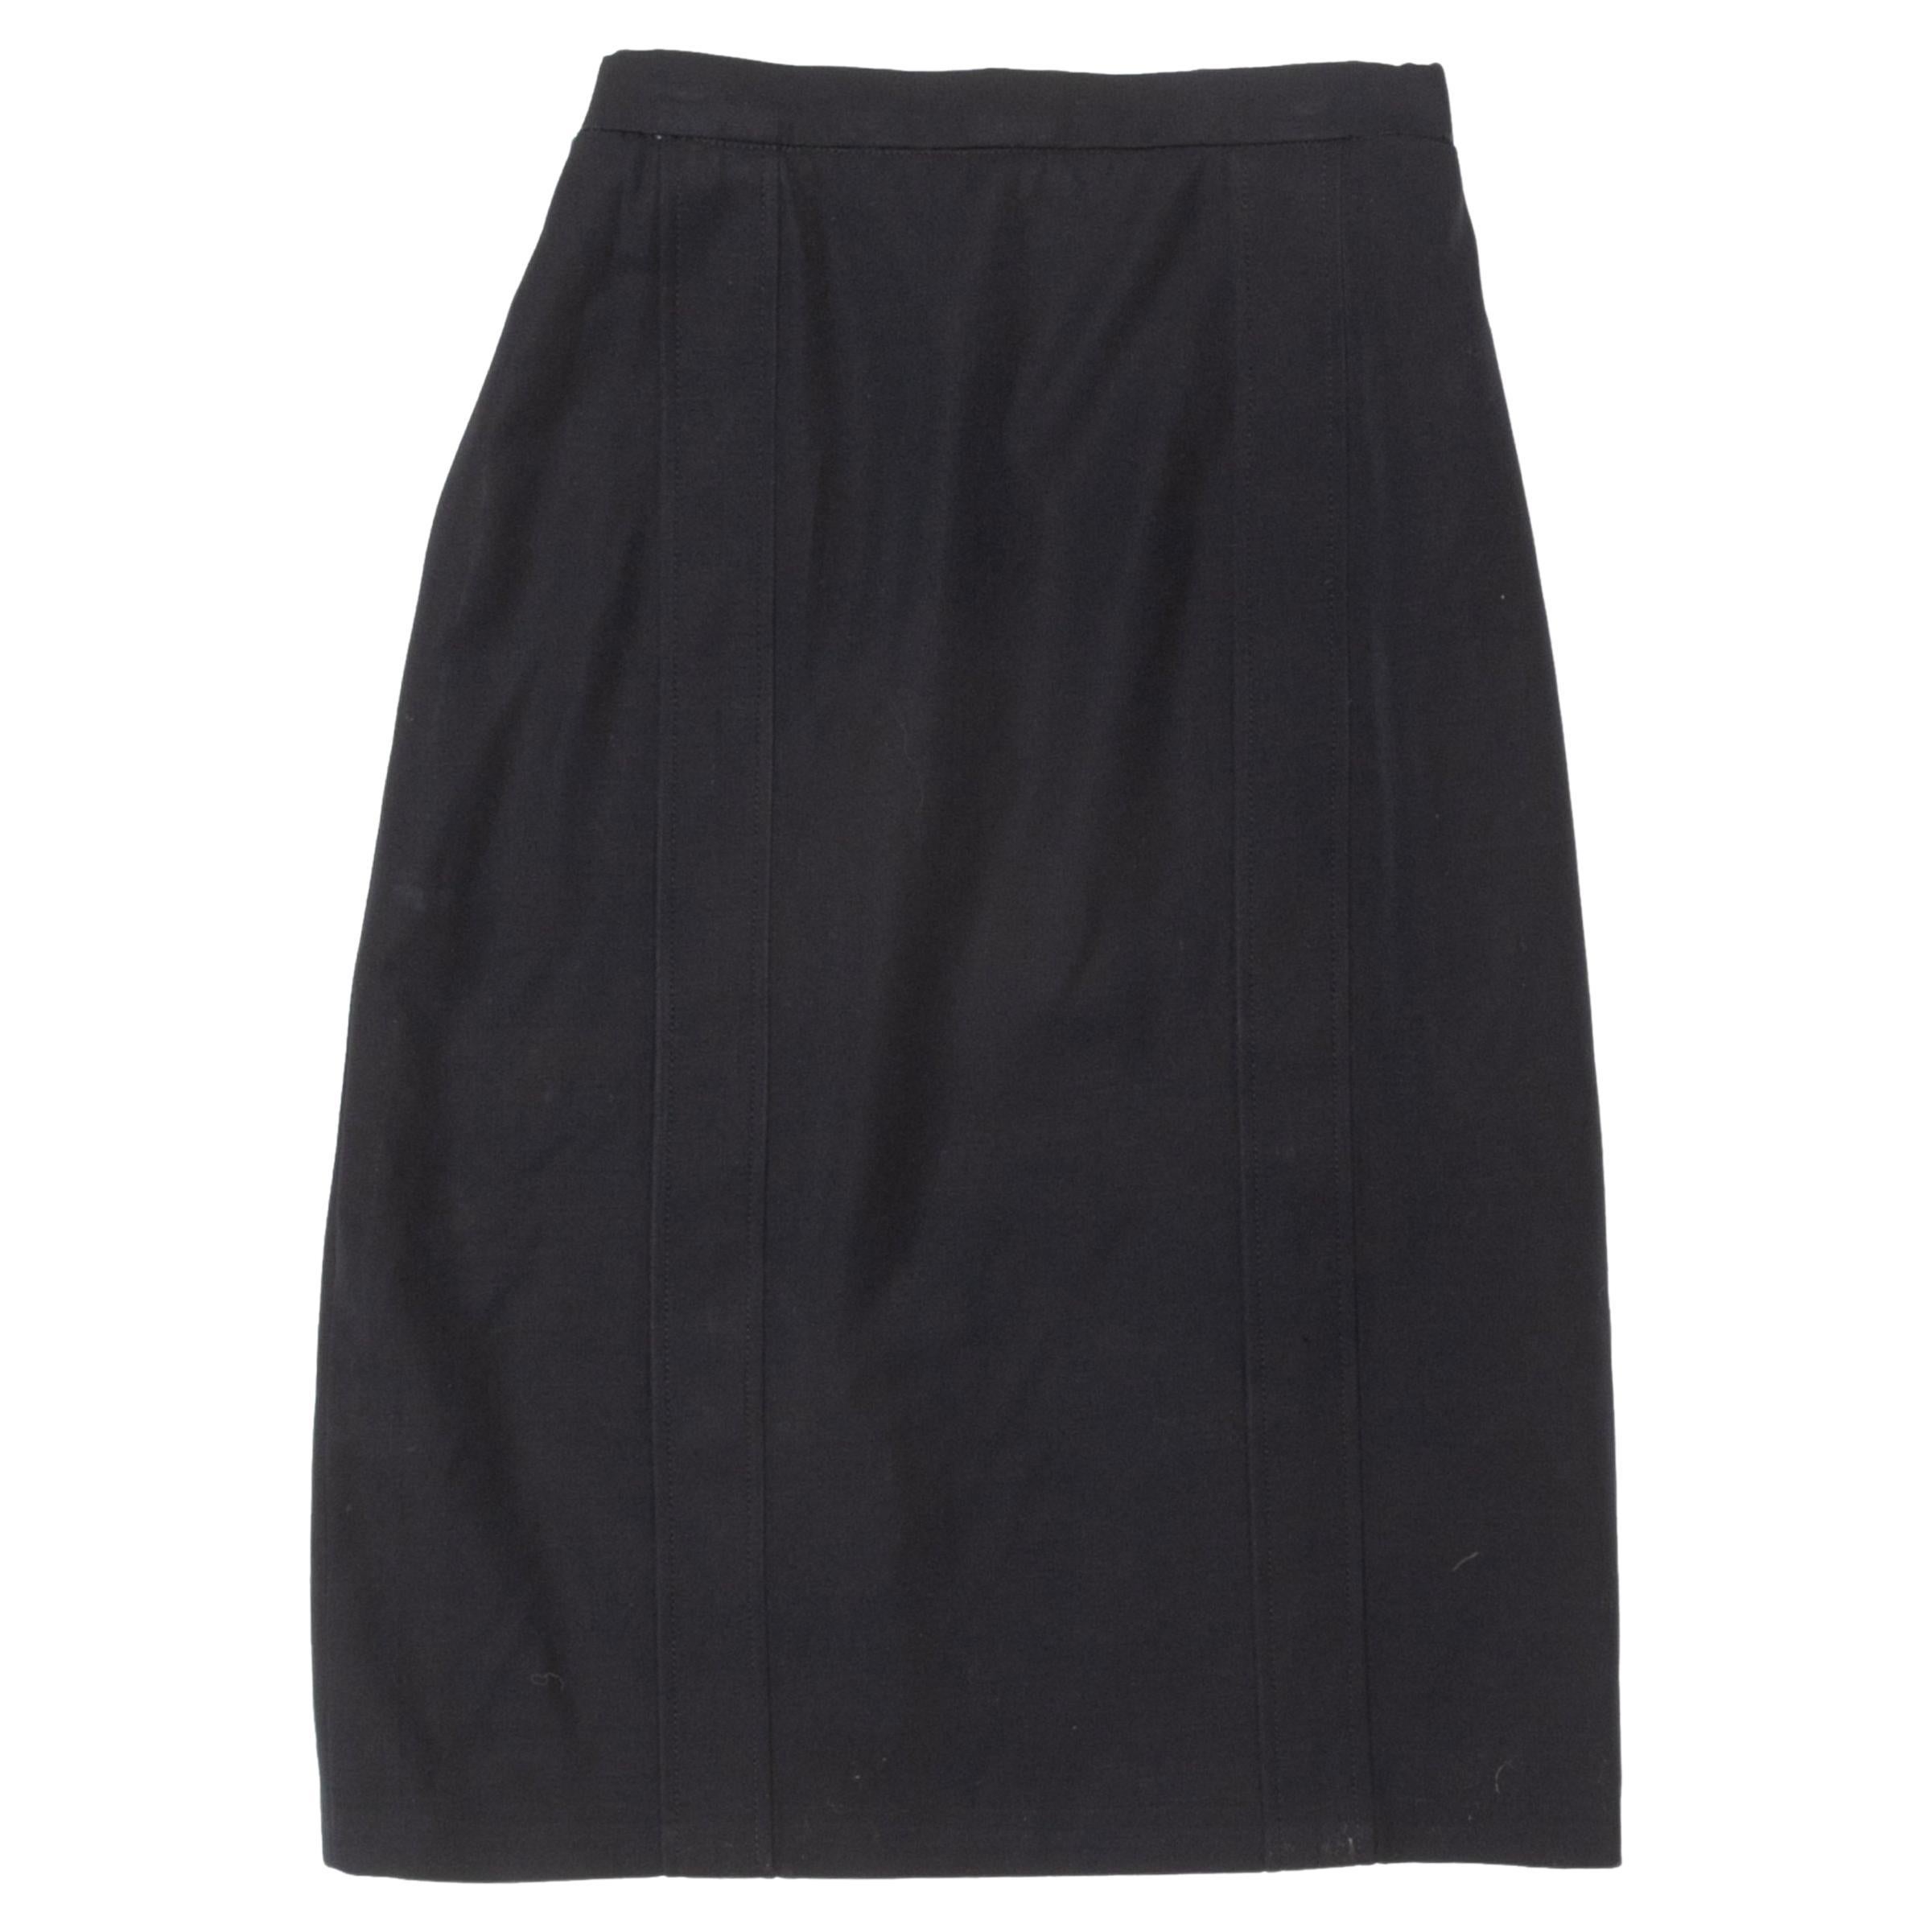 Vintage Dark Navy Chanel Boutique Wool Skirt